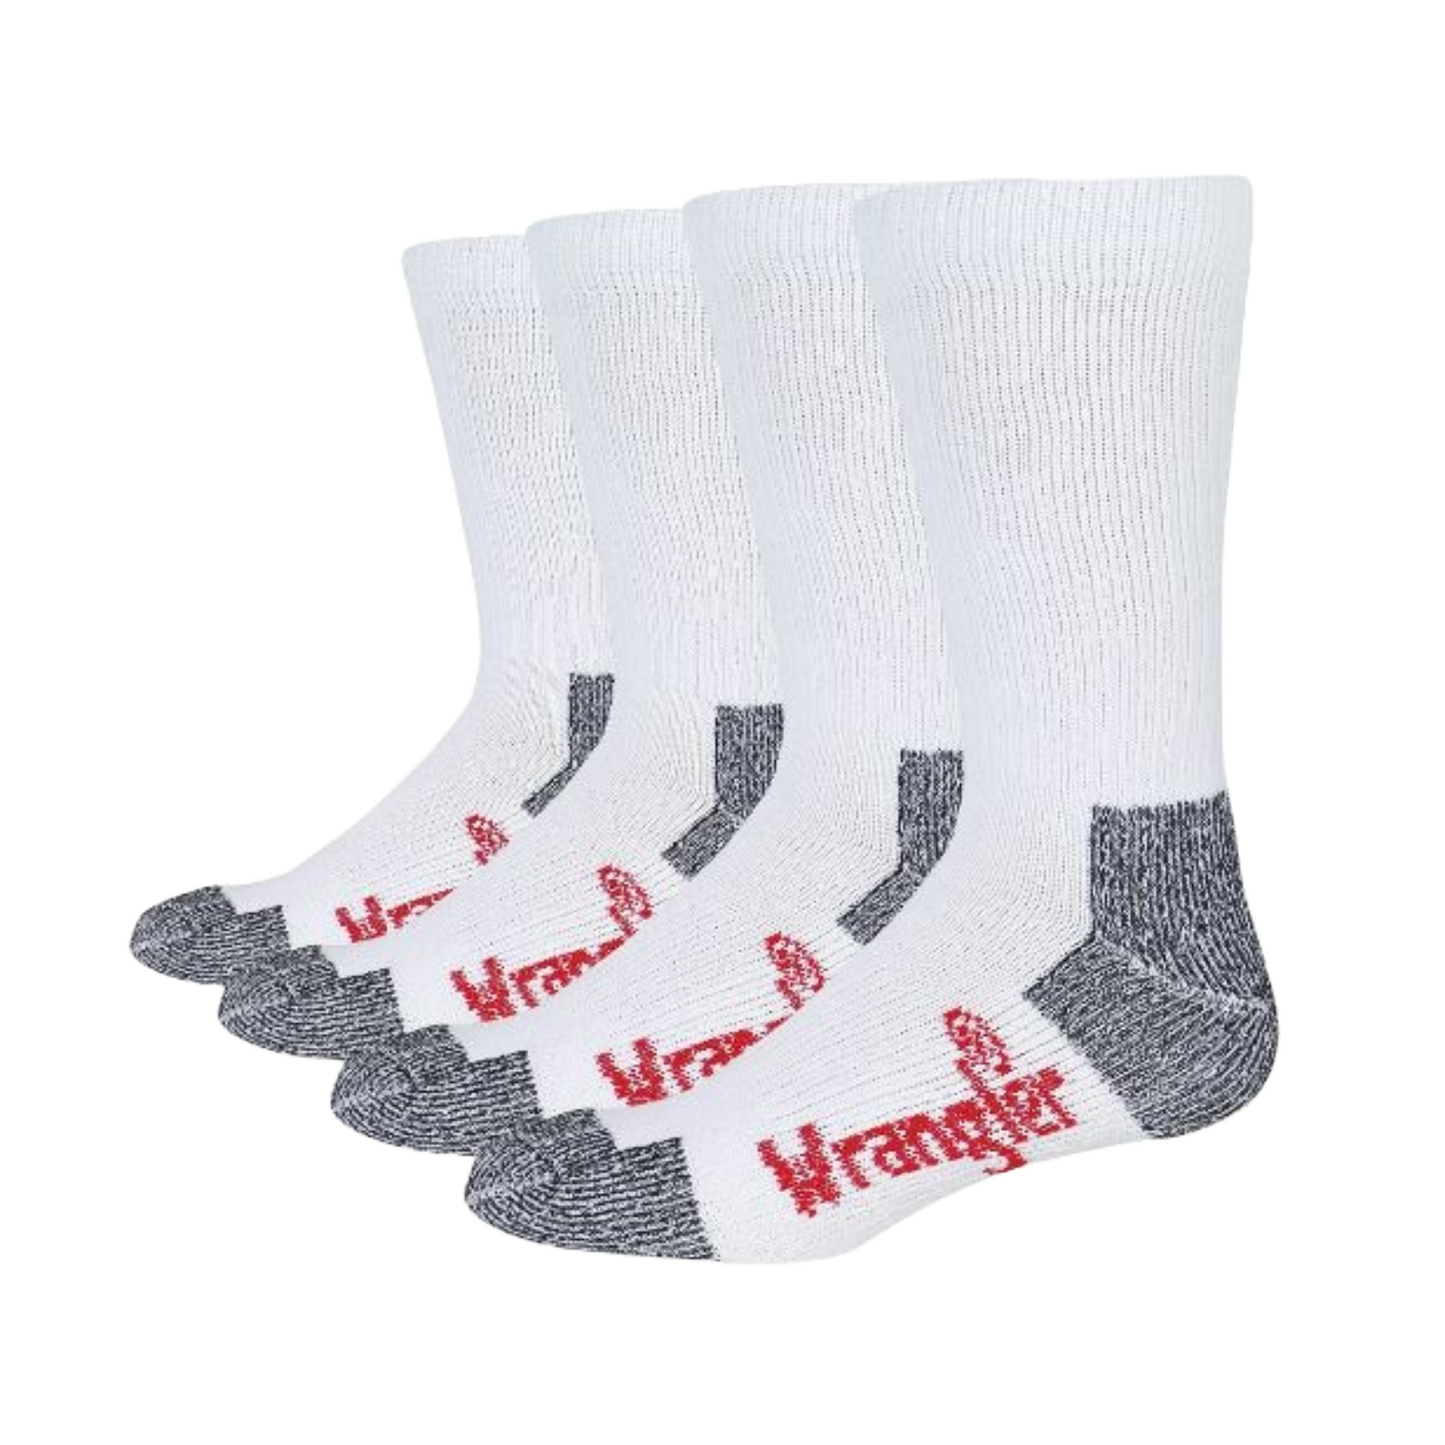 Wrangler® Riggs Men's Cotton Over The Calf White Work Boot Socks 2 Pack 2/72435-1000-LG (copy)